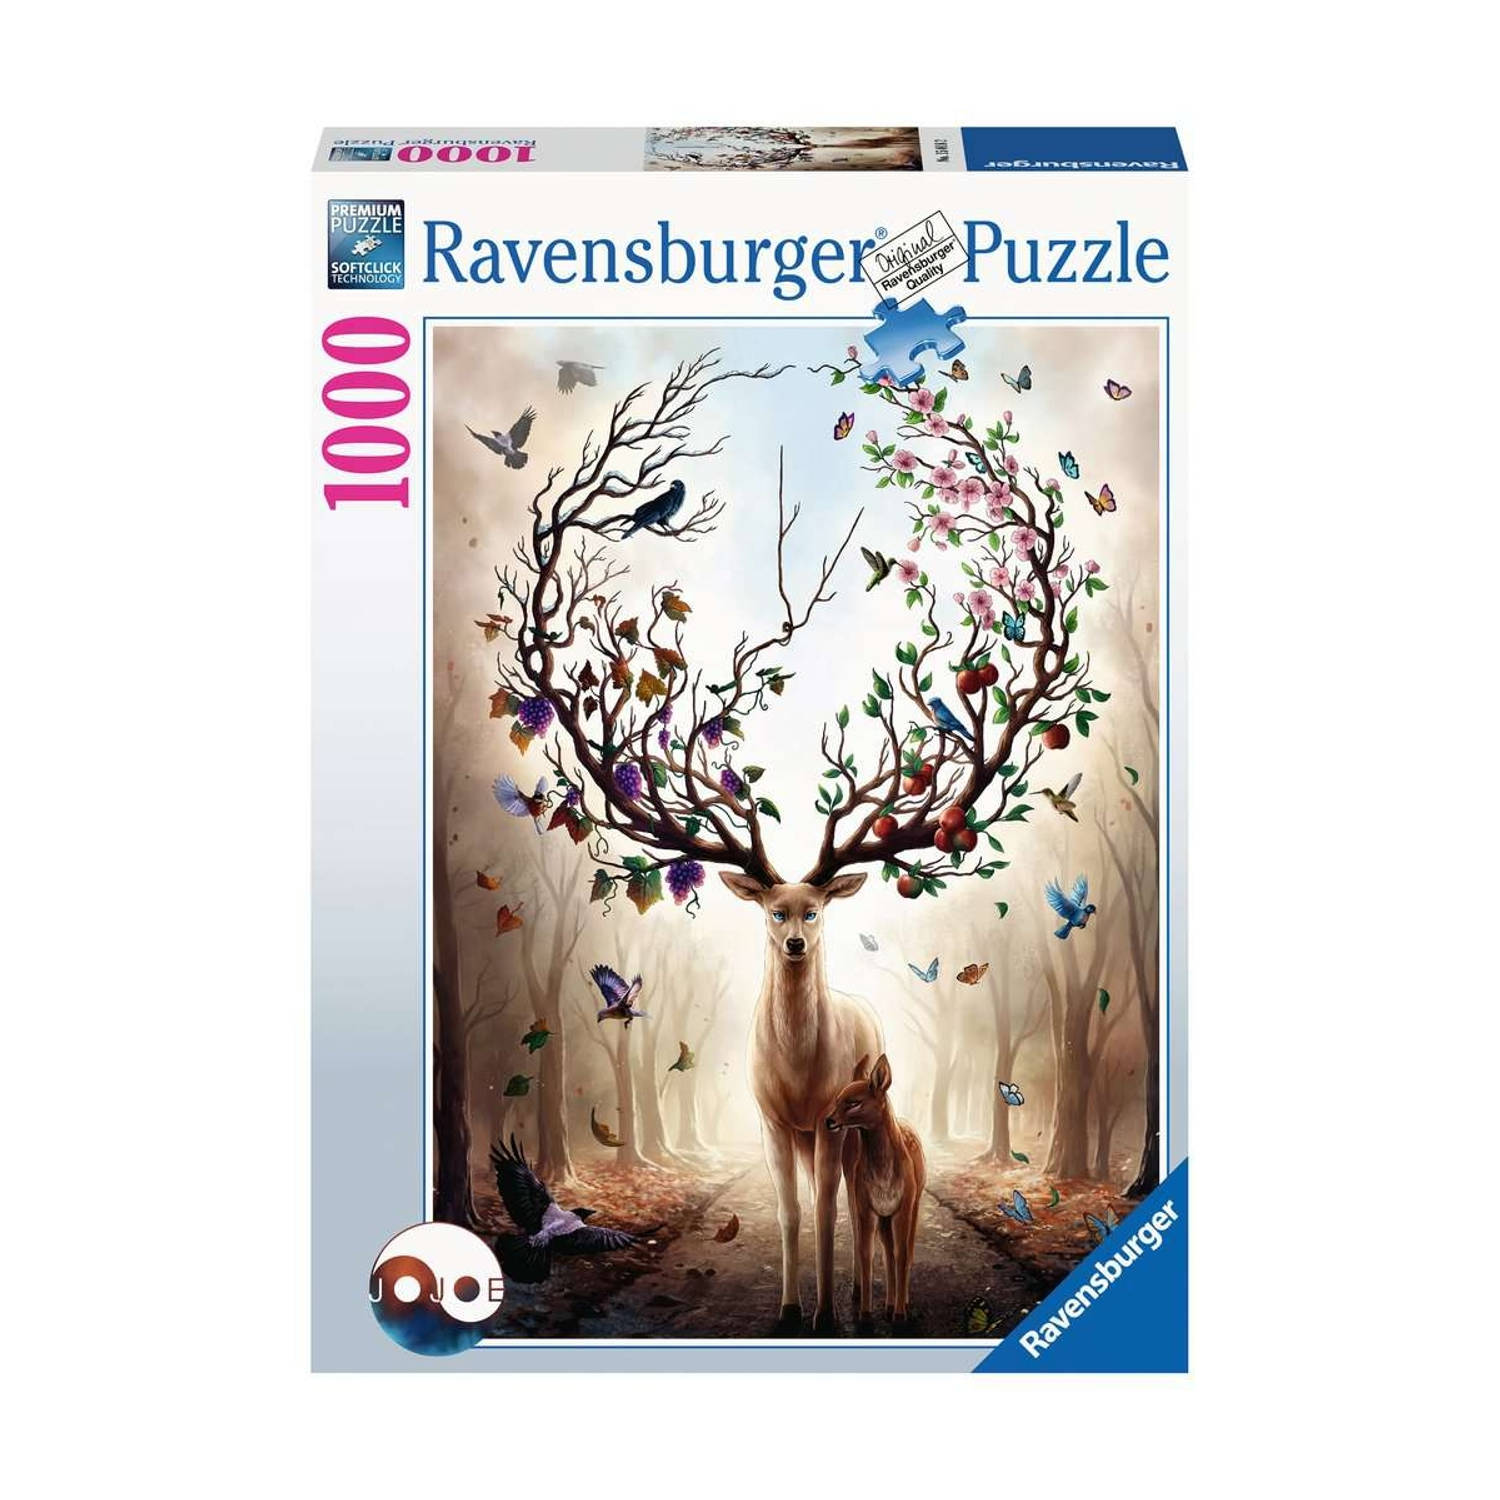 Ravensburger puzzel Fantasydeer 1000 stukjes